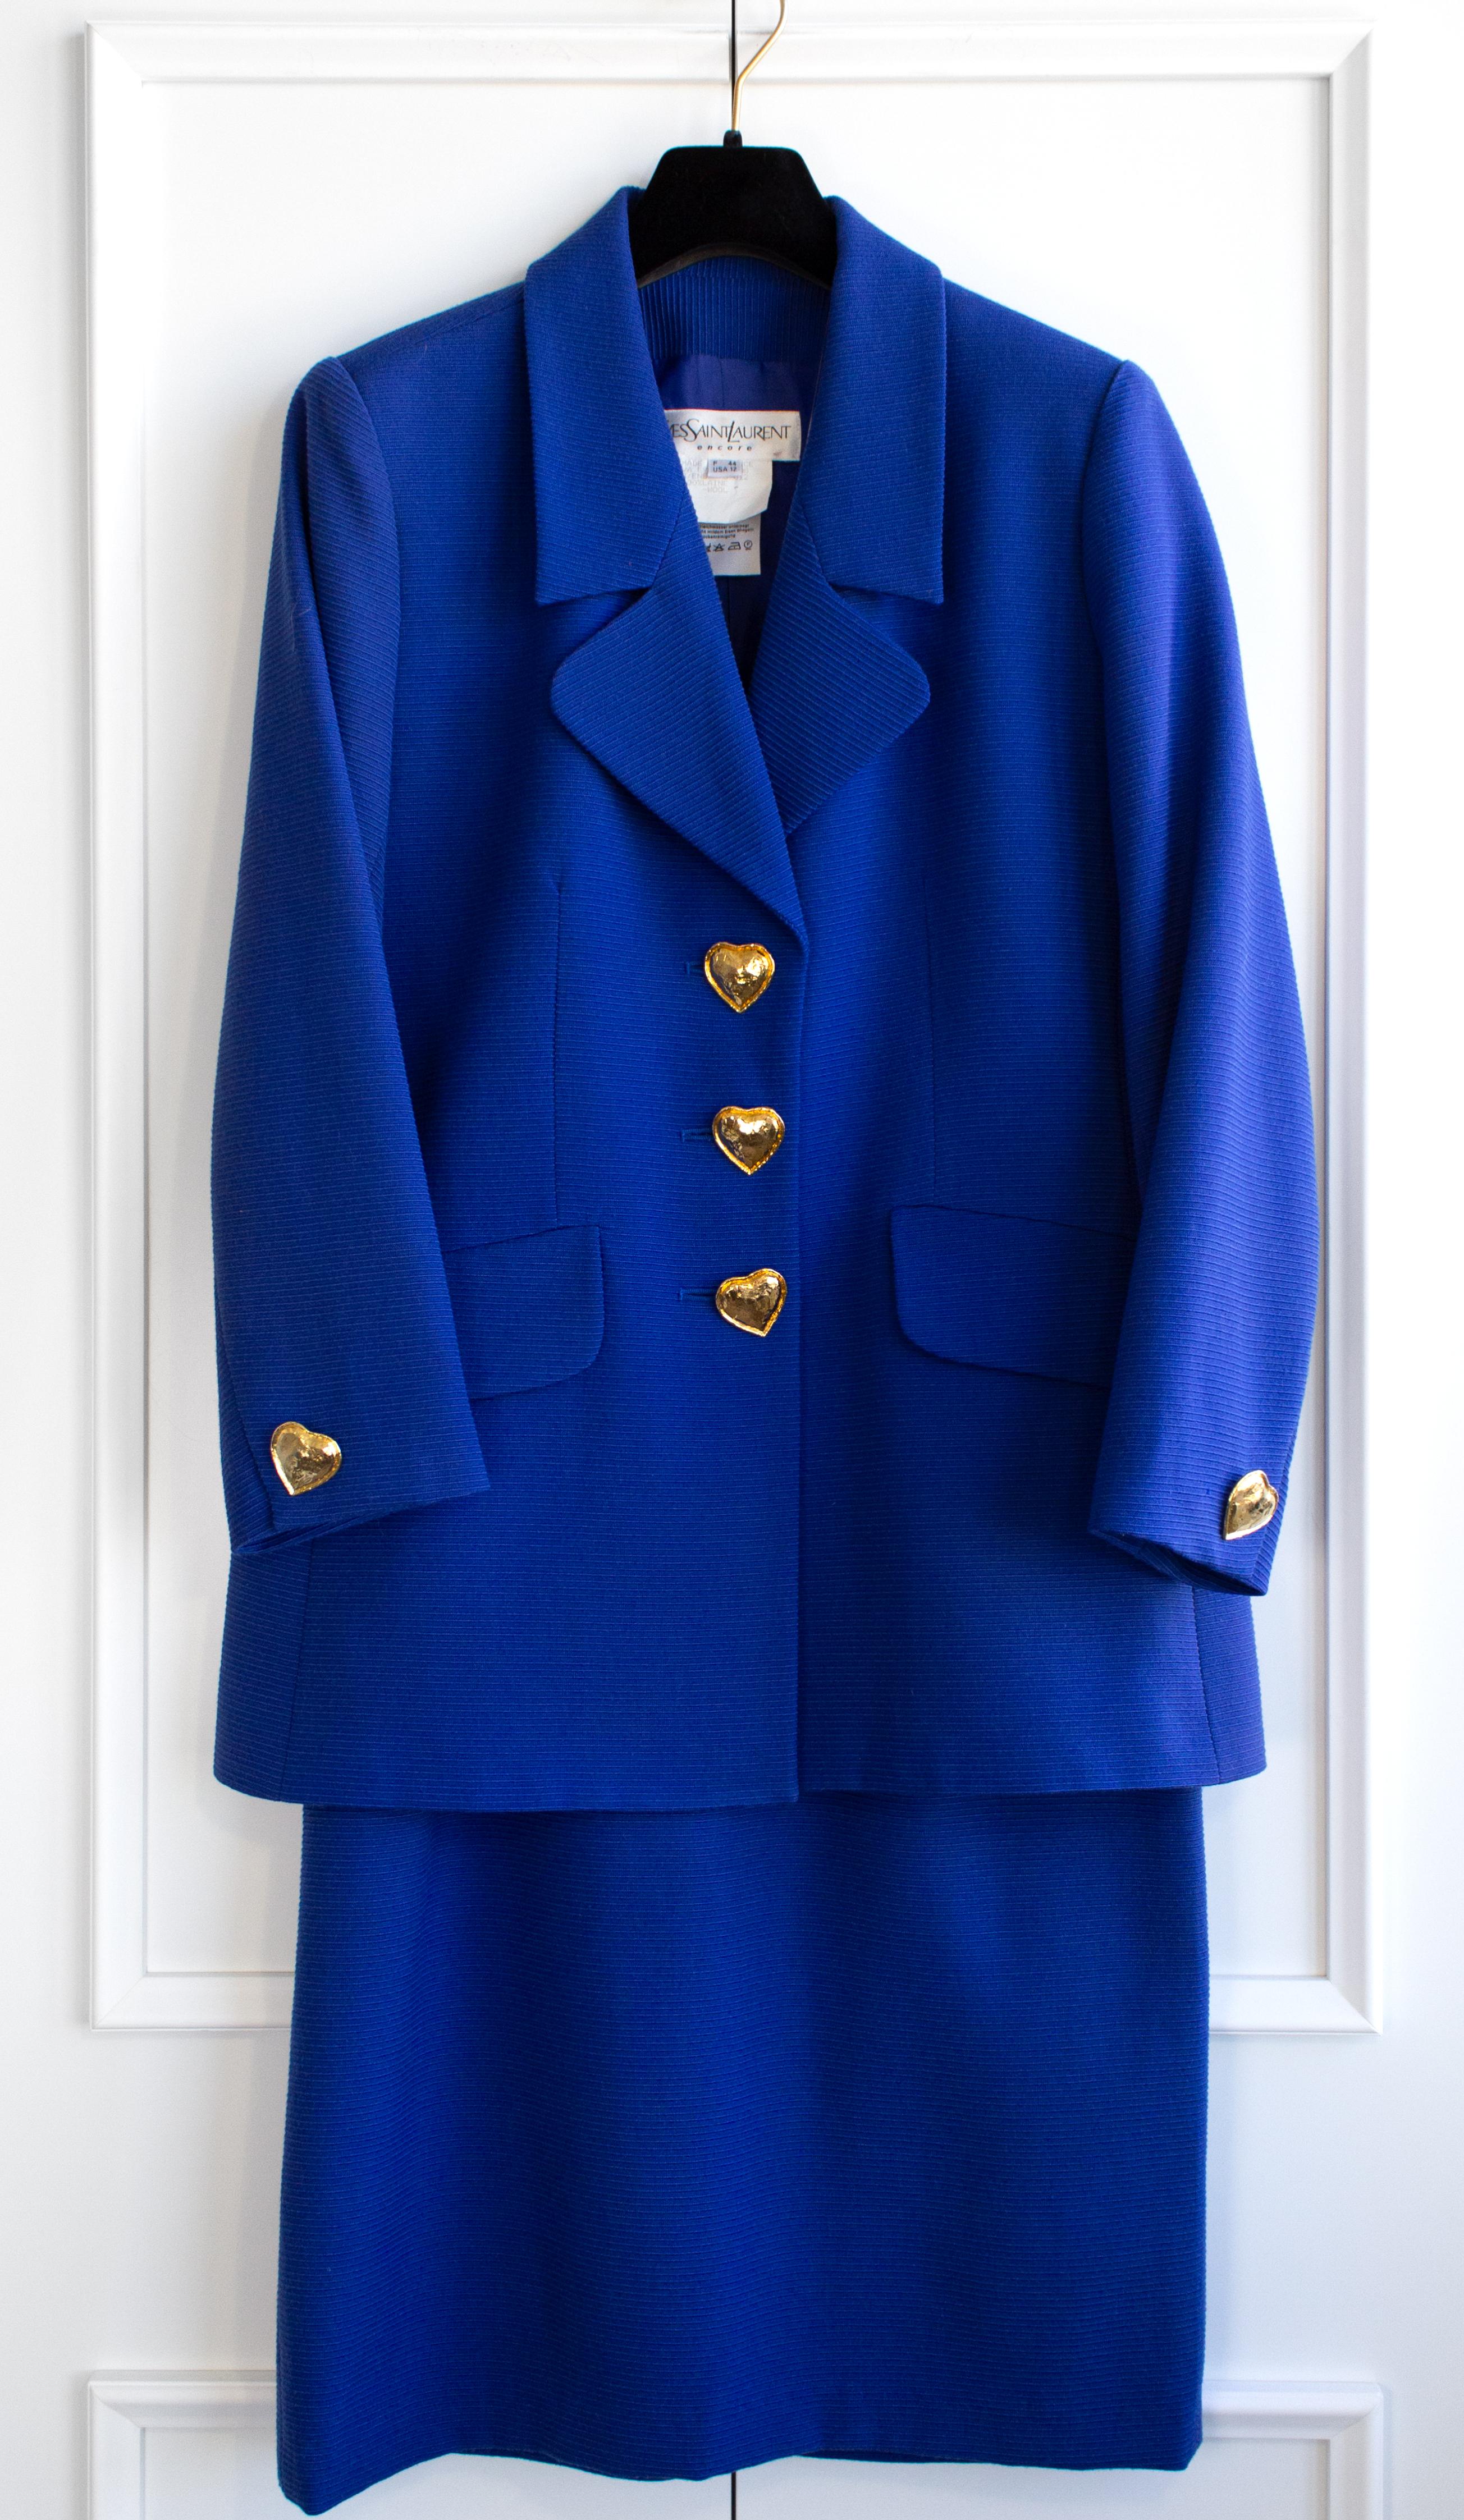 Women's Yves Saint Laurent Encore Vintage S/S 1995 Royal Blue Gold Hearts Jacket Suit For Sale